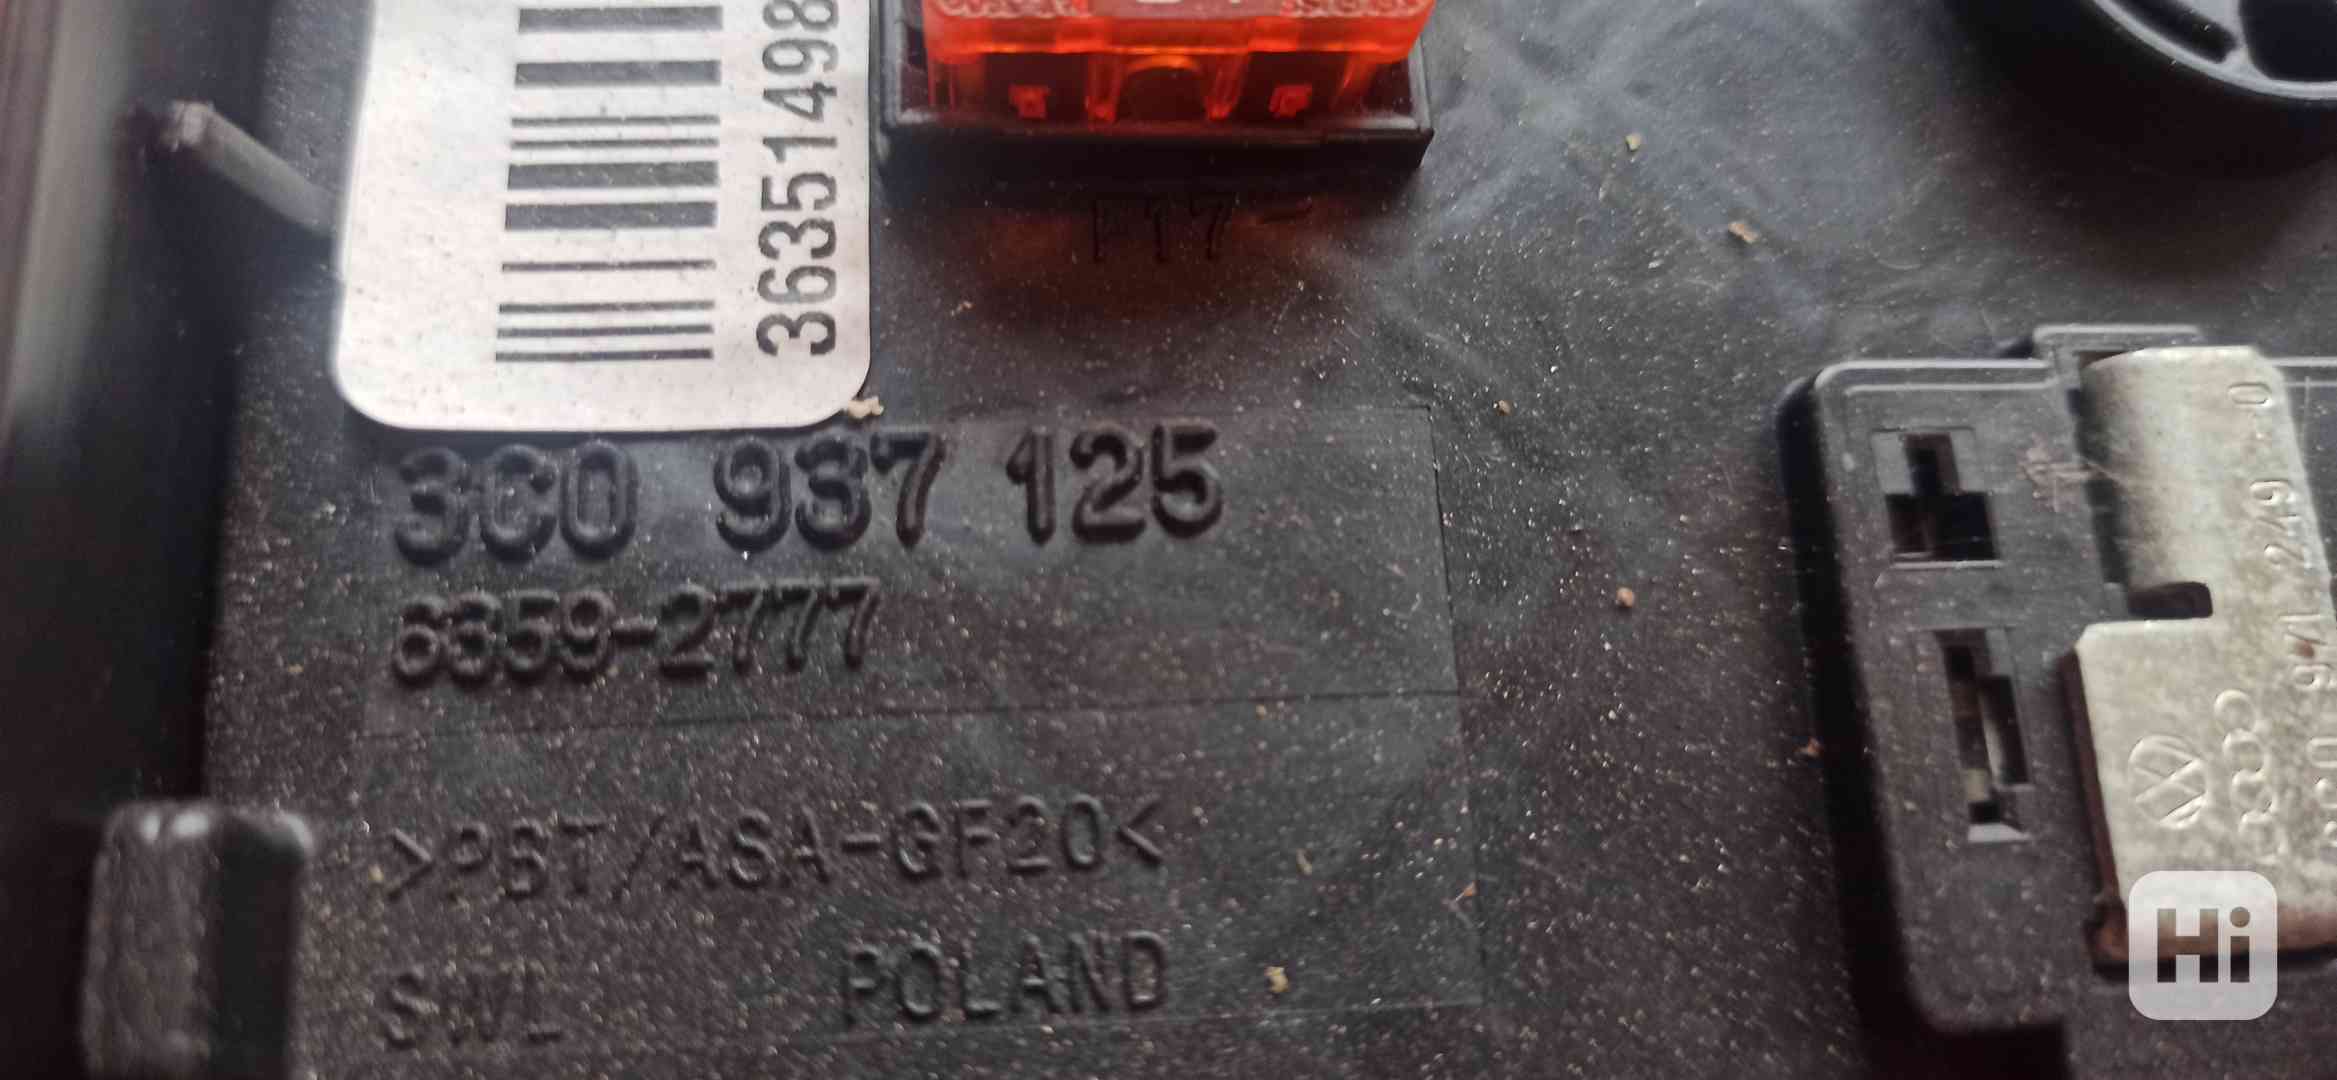 Pojistková skříňka VW Passat B6 3C0 937 125 - foto 1